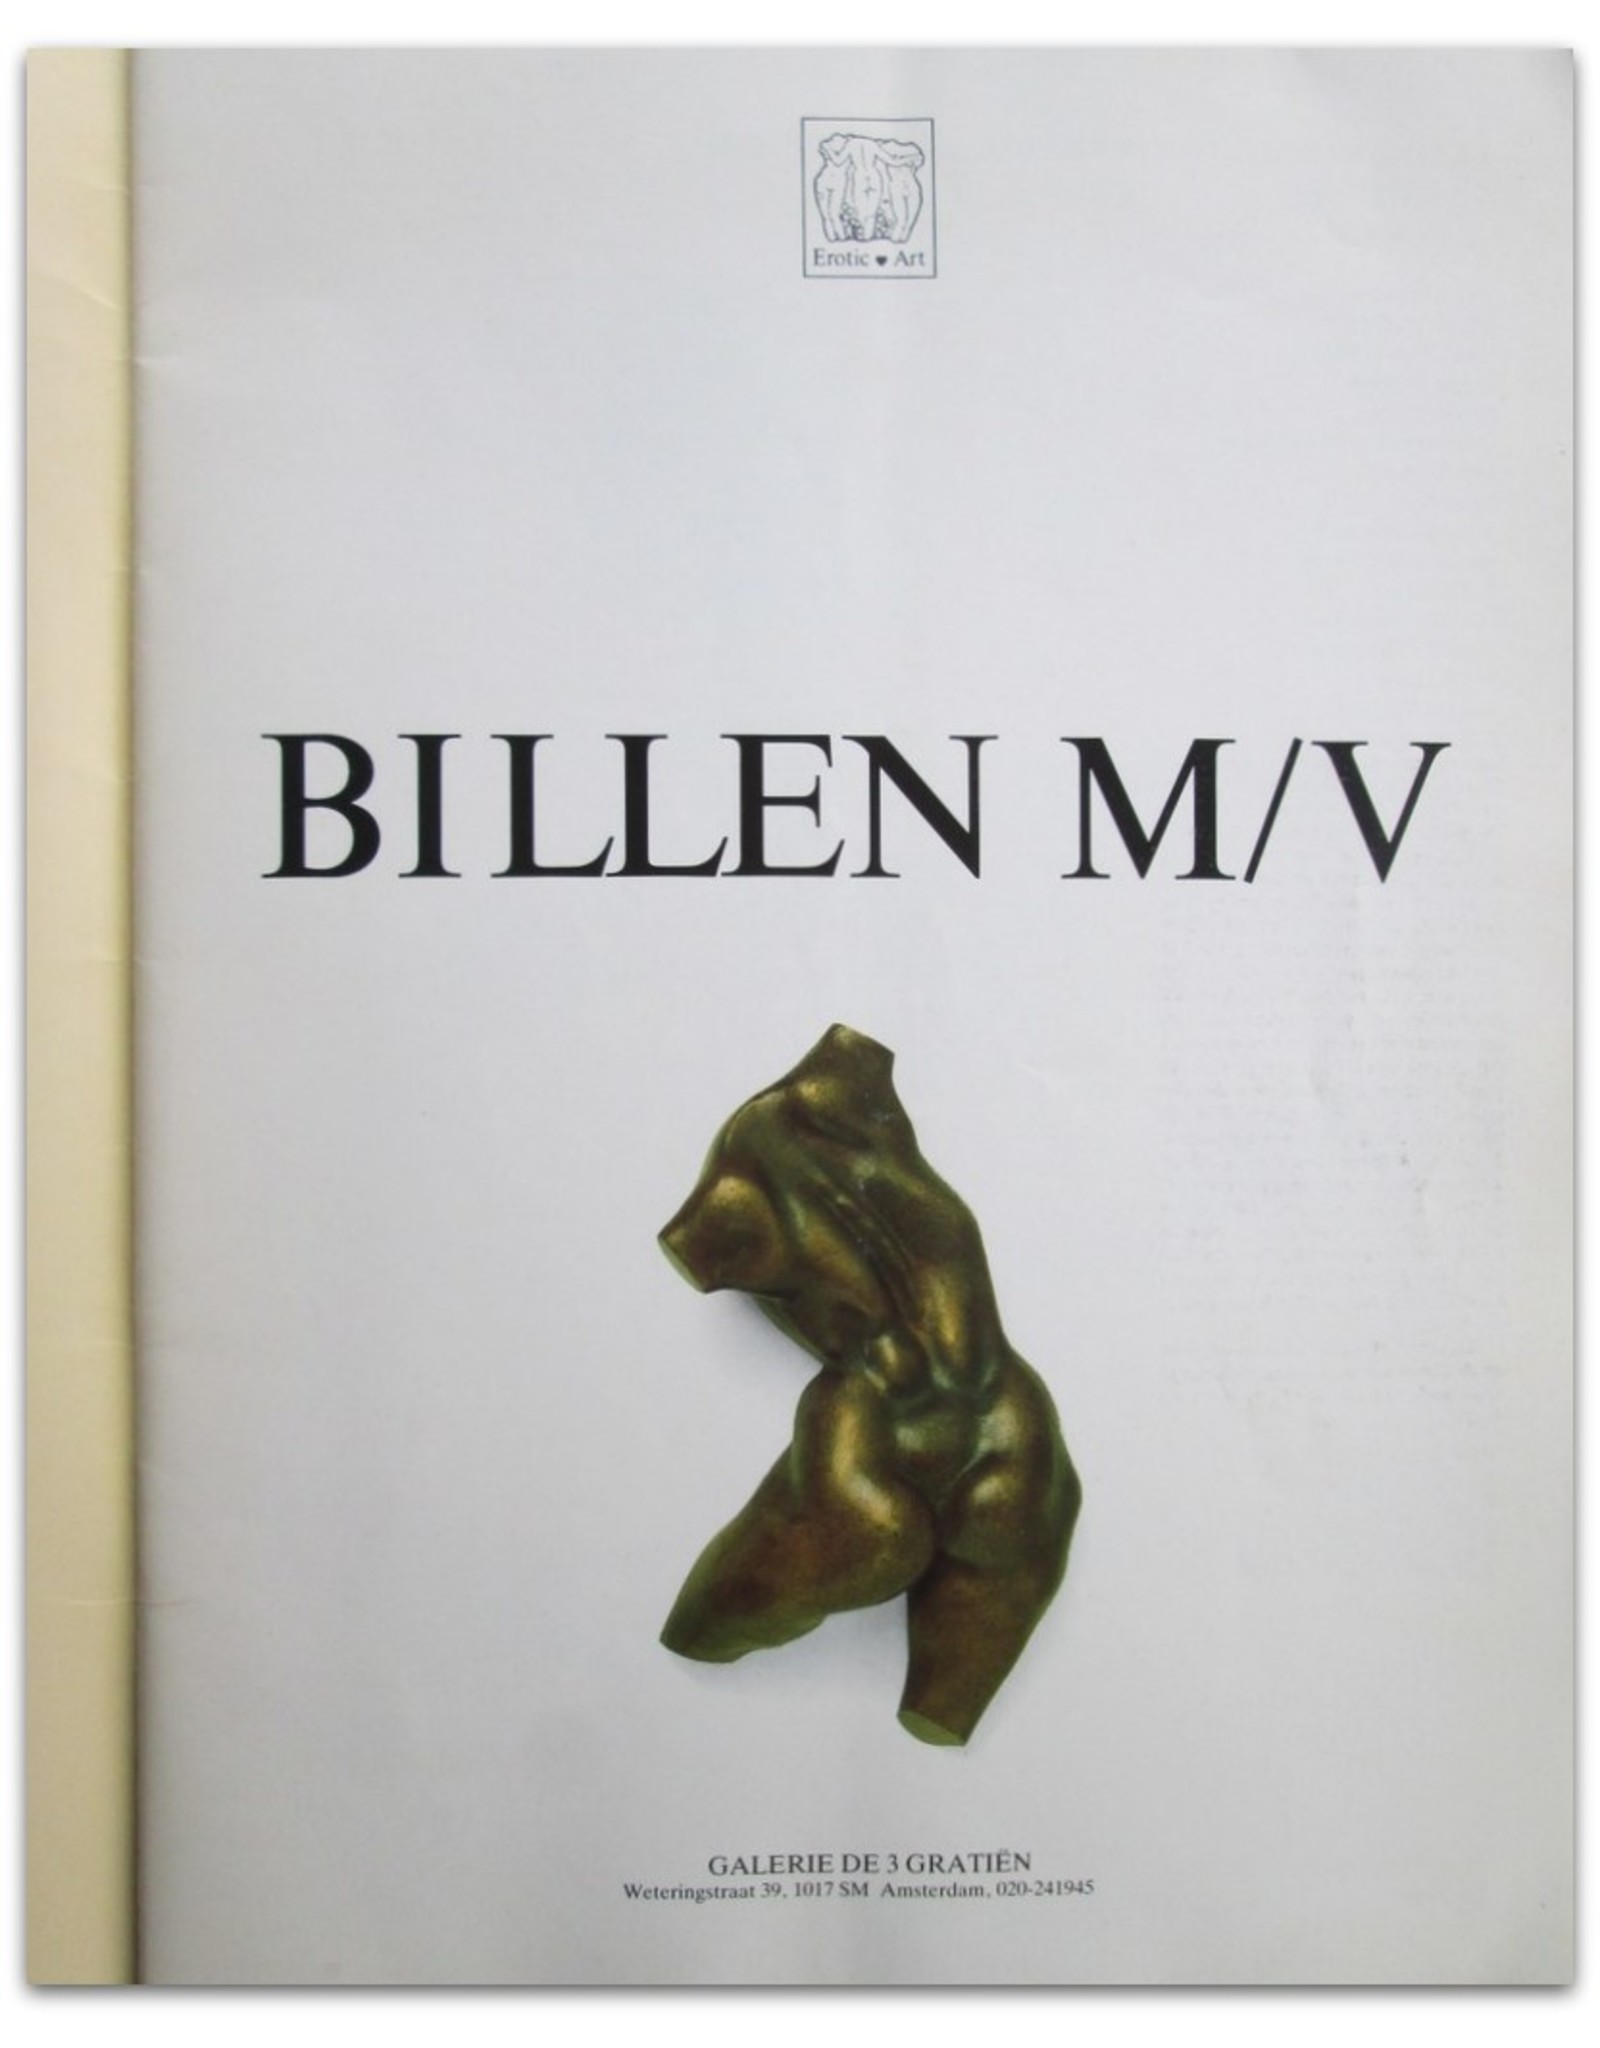 Trudy Heemskerk [ed.] - Billen M/V